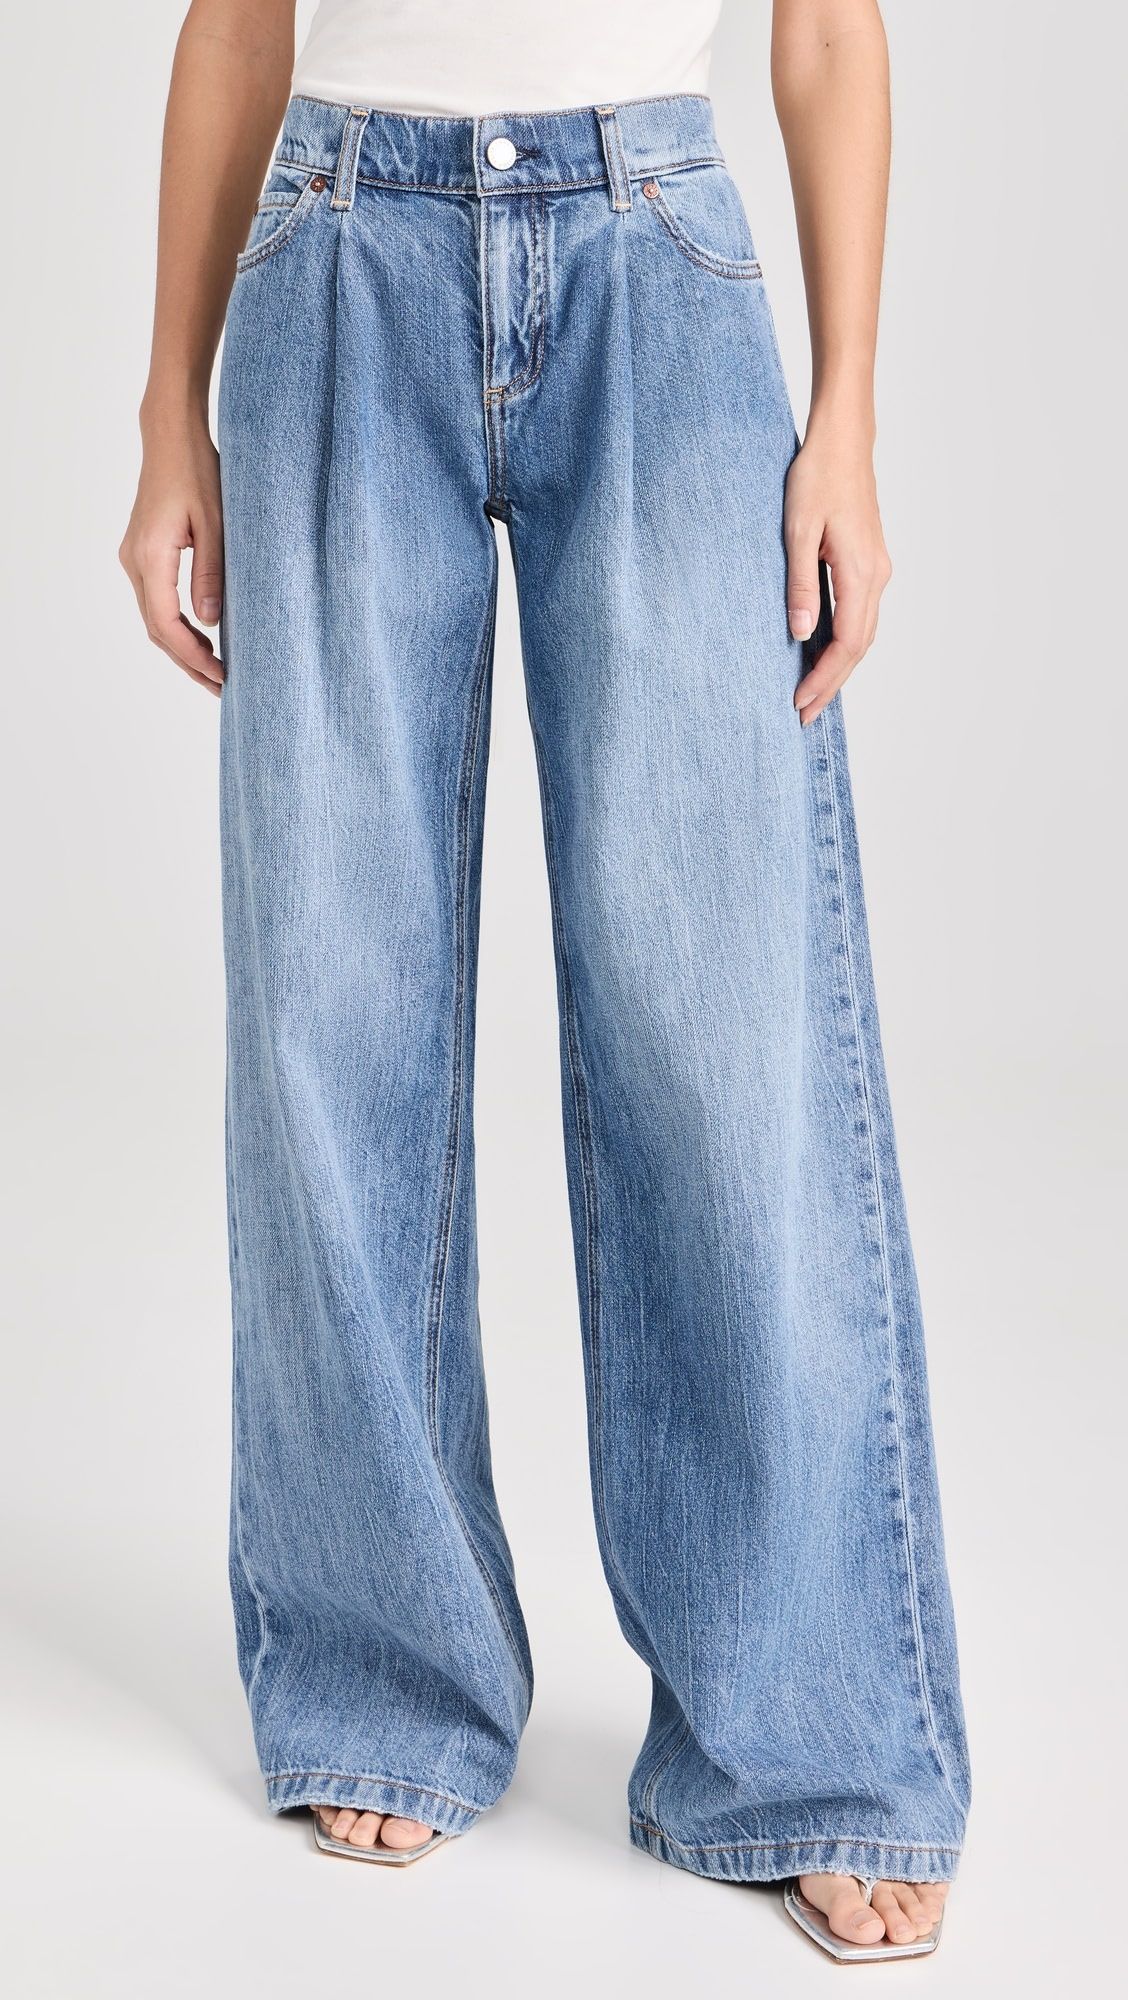 Joette 5 Pocket Jeans | Shopbop